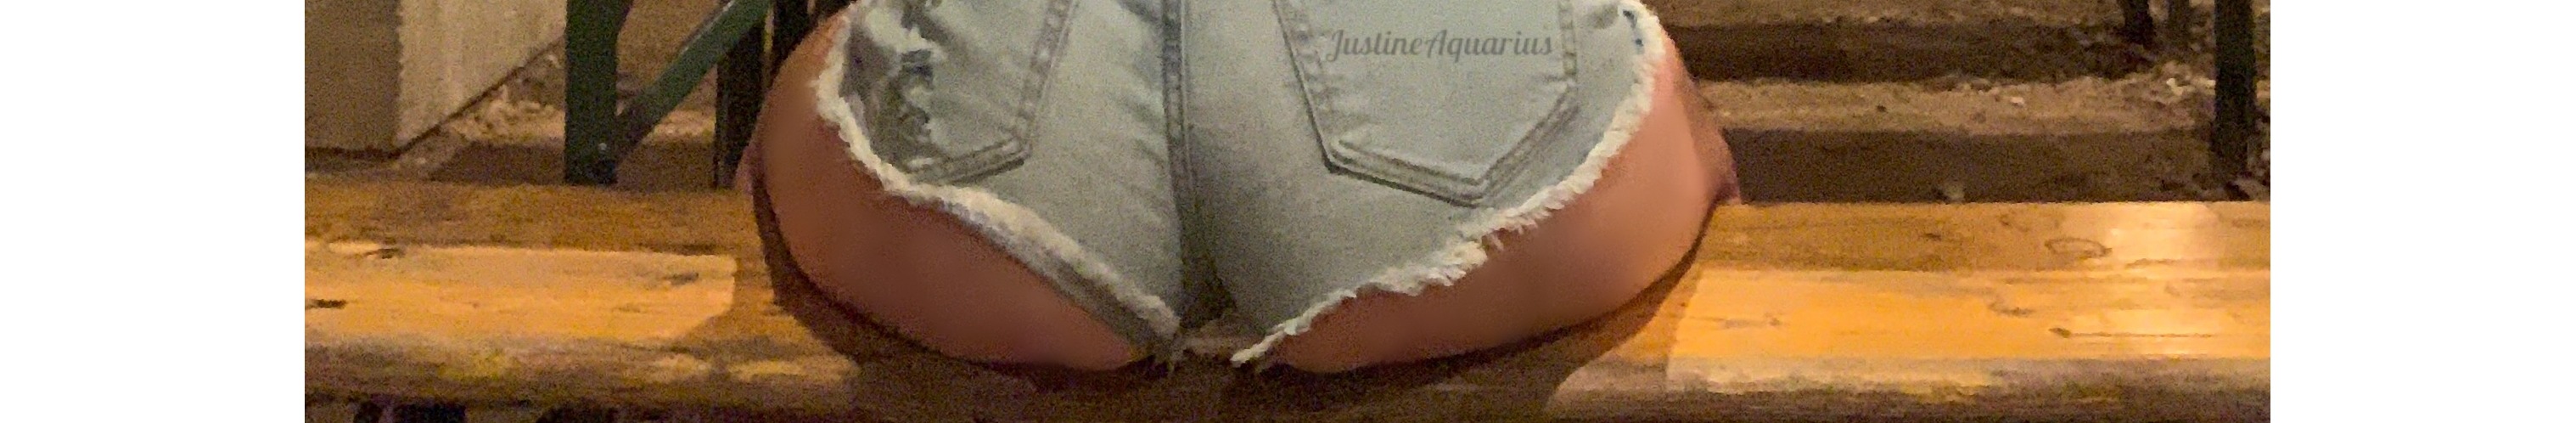 Justine Aquarius - profile image